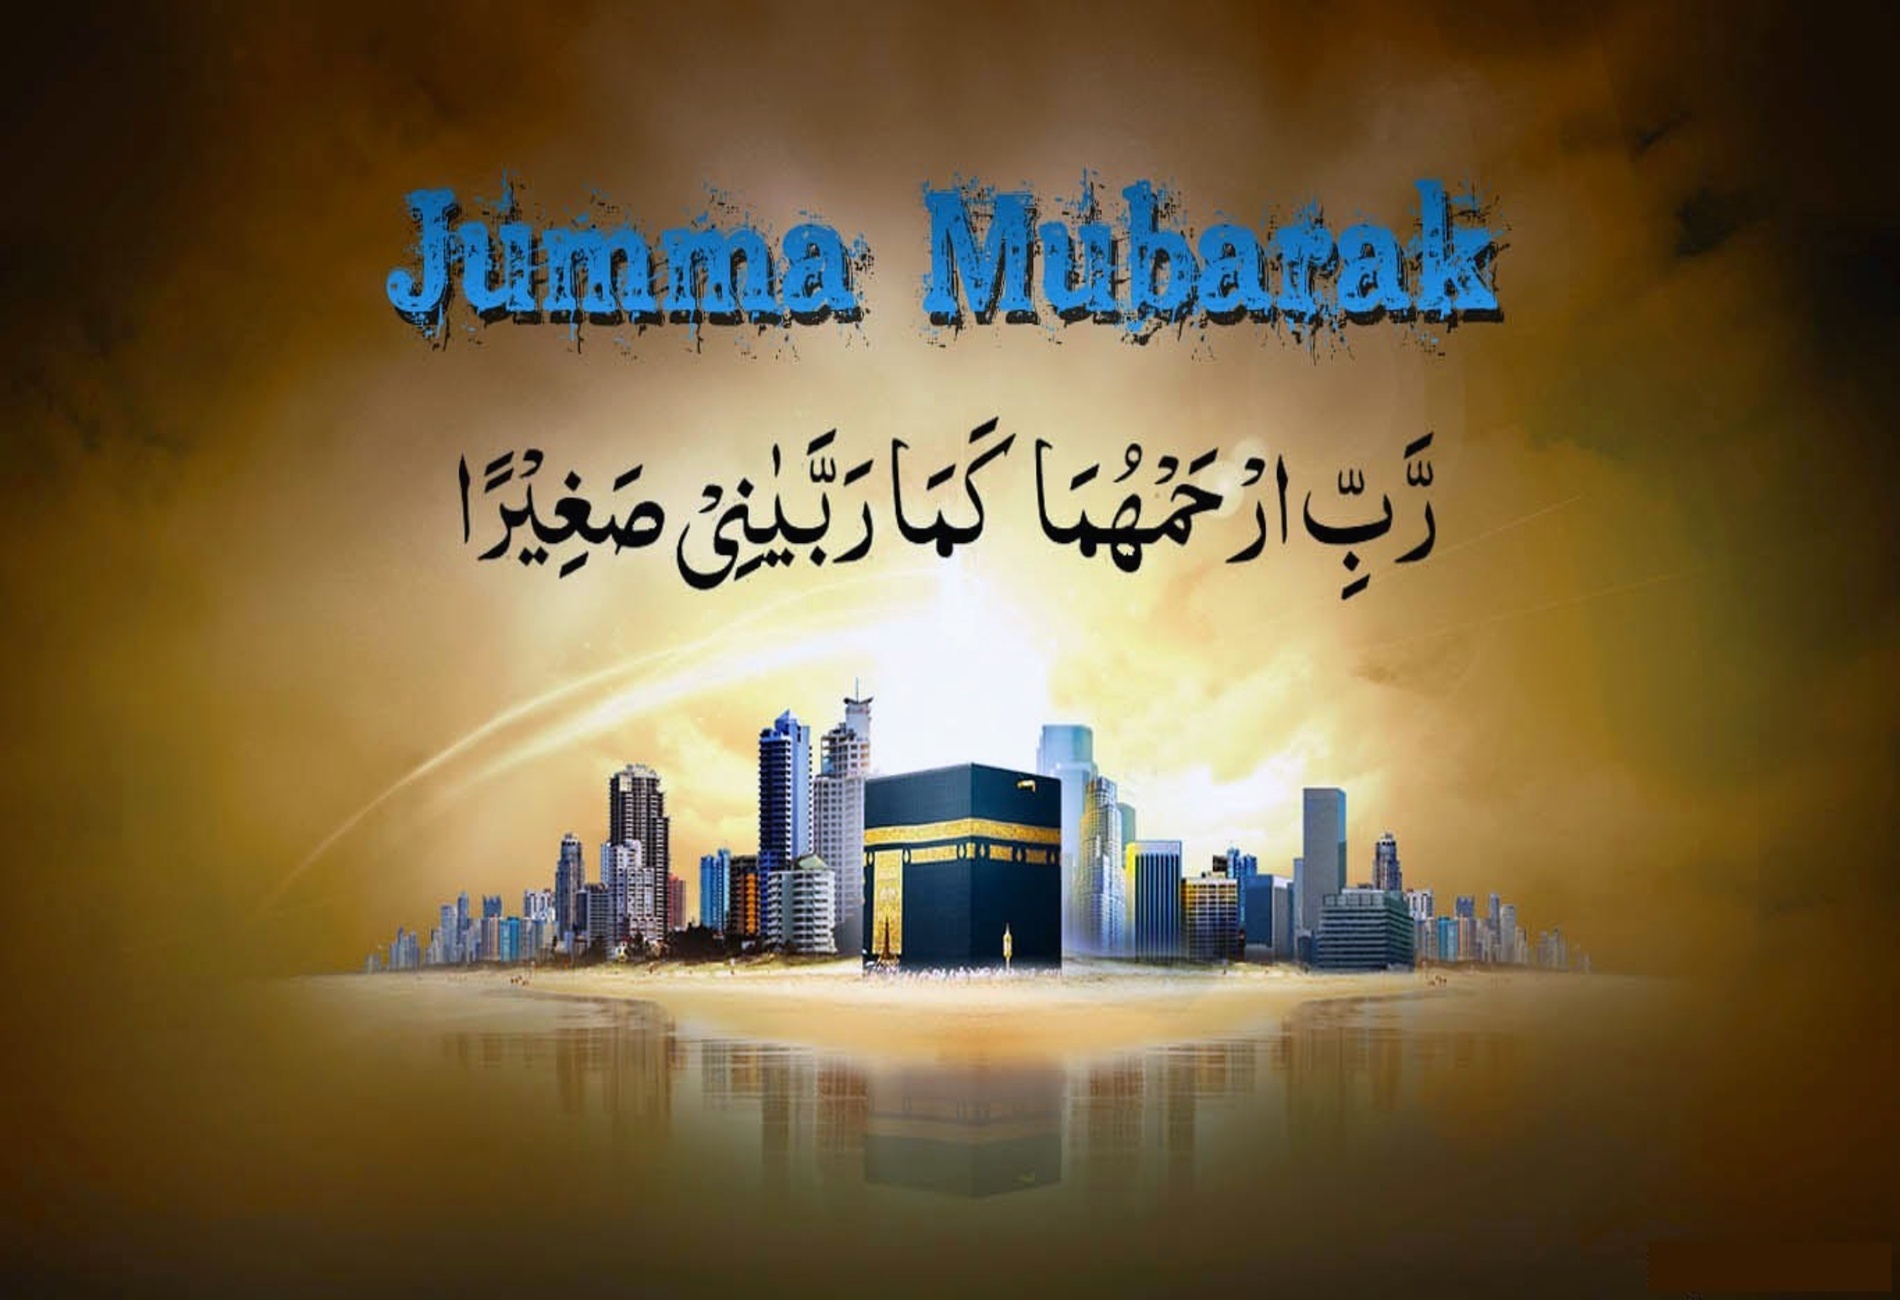 Beautiful-Jumma-Mubarak-HD-Images